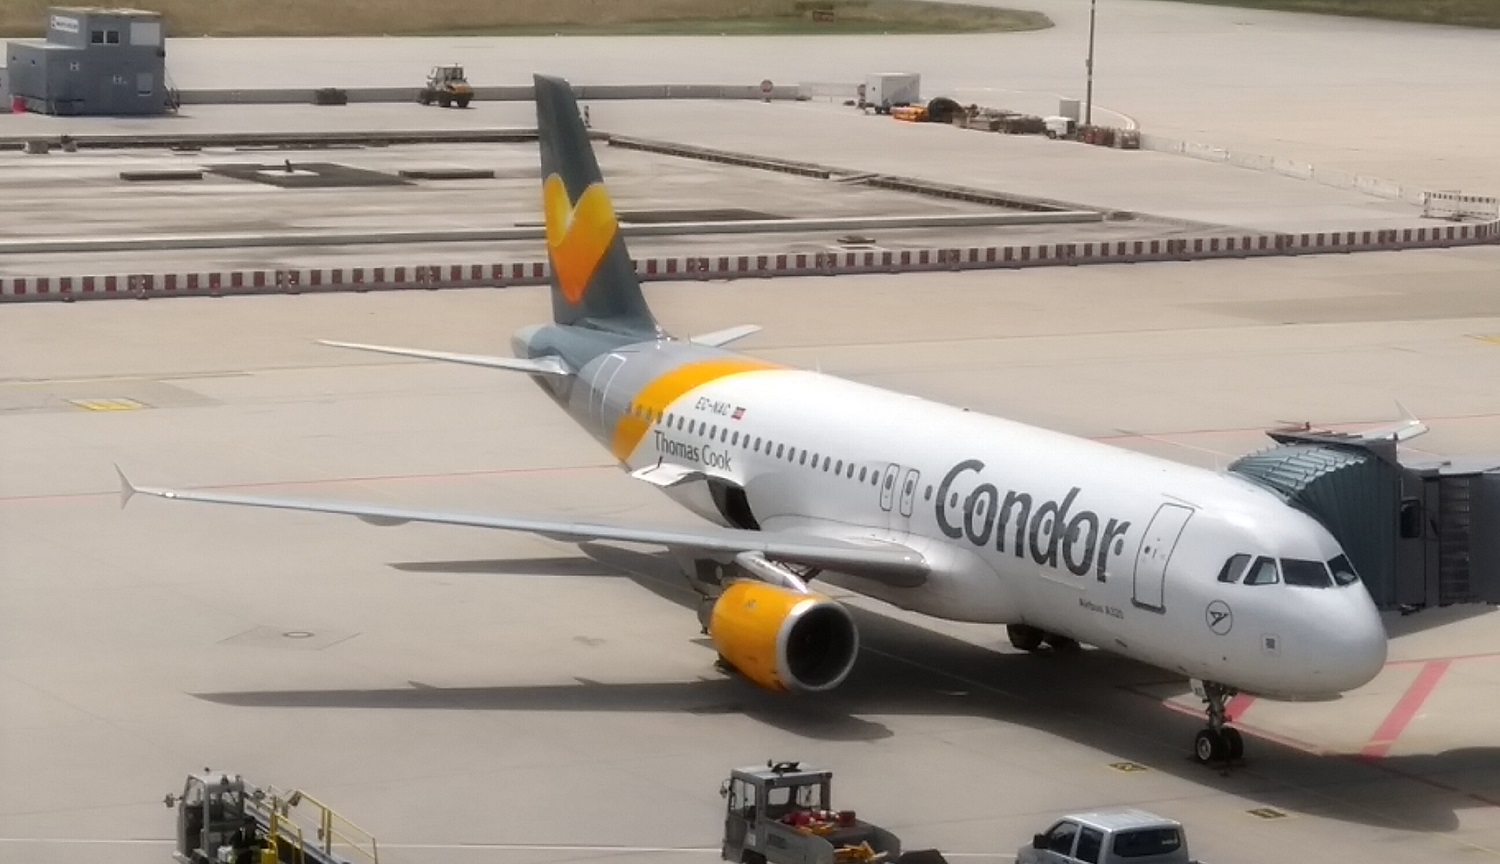 Flugzeug der Condor auf Parkposition am Flughafen Stuttgart